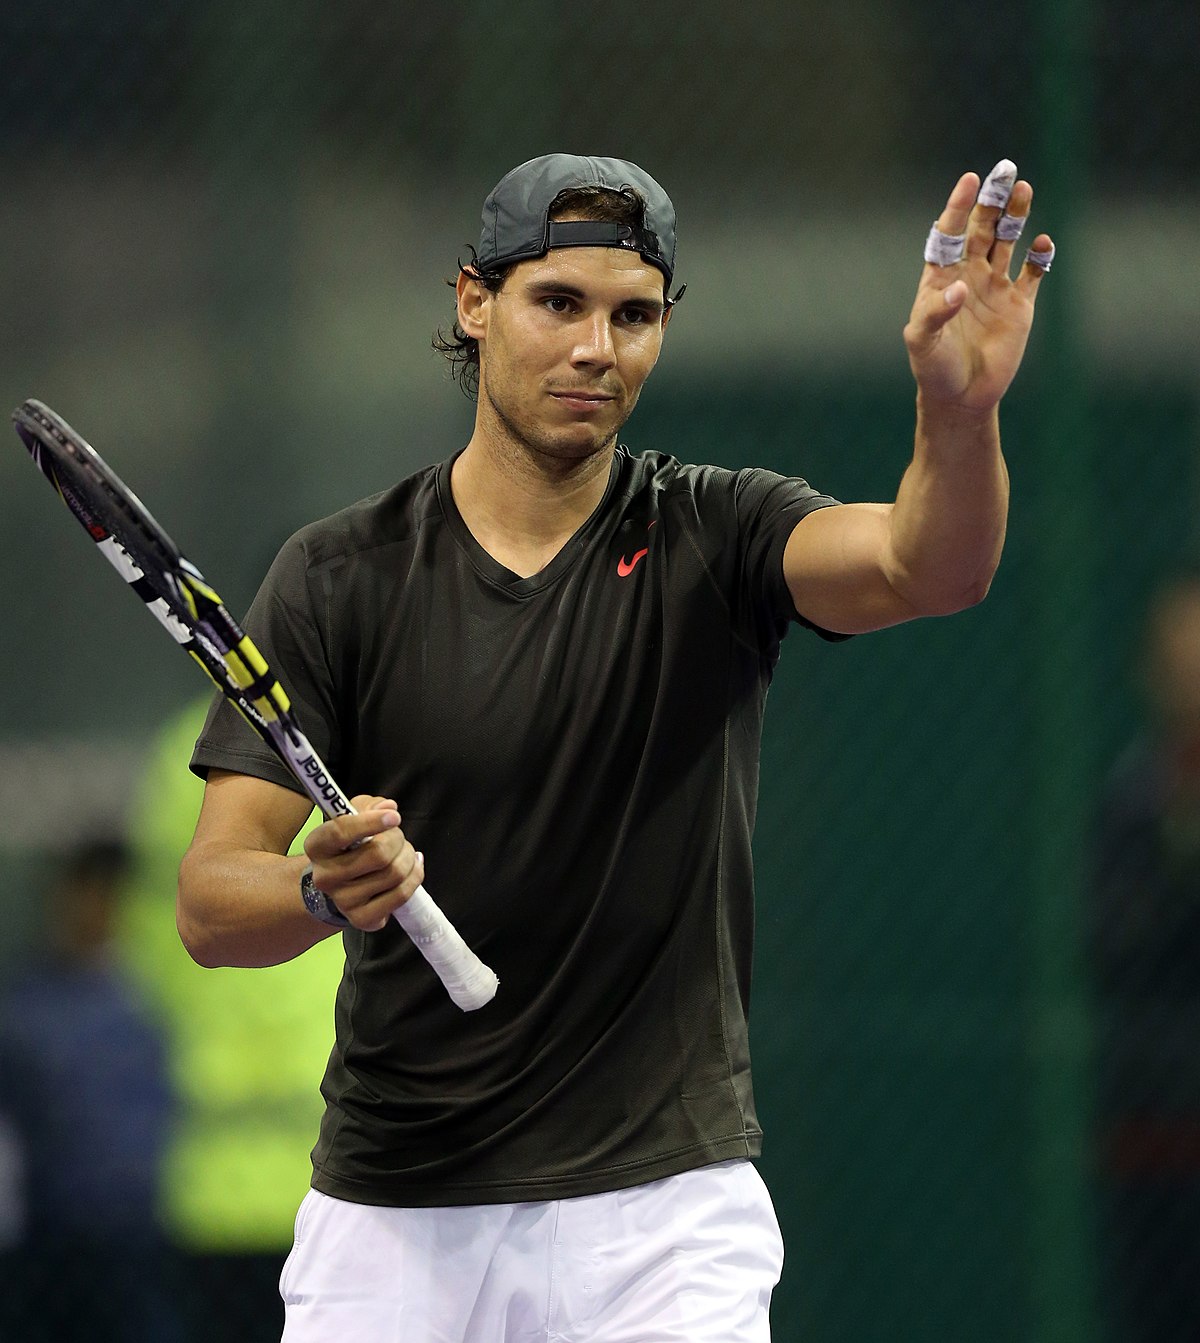 Hot nhất thể thao sáng 14/2: Nadal có thể bỏ xa Djokovic sau Roland Garros